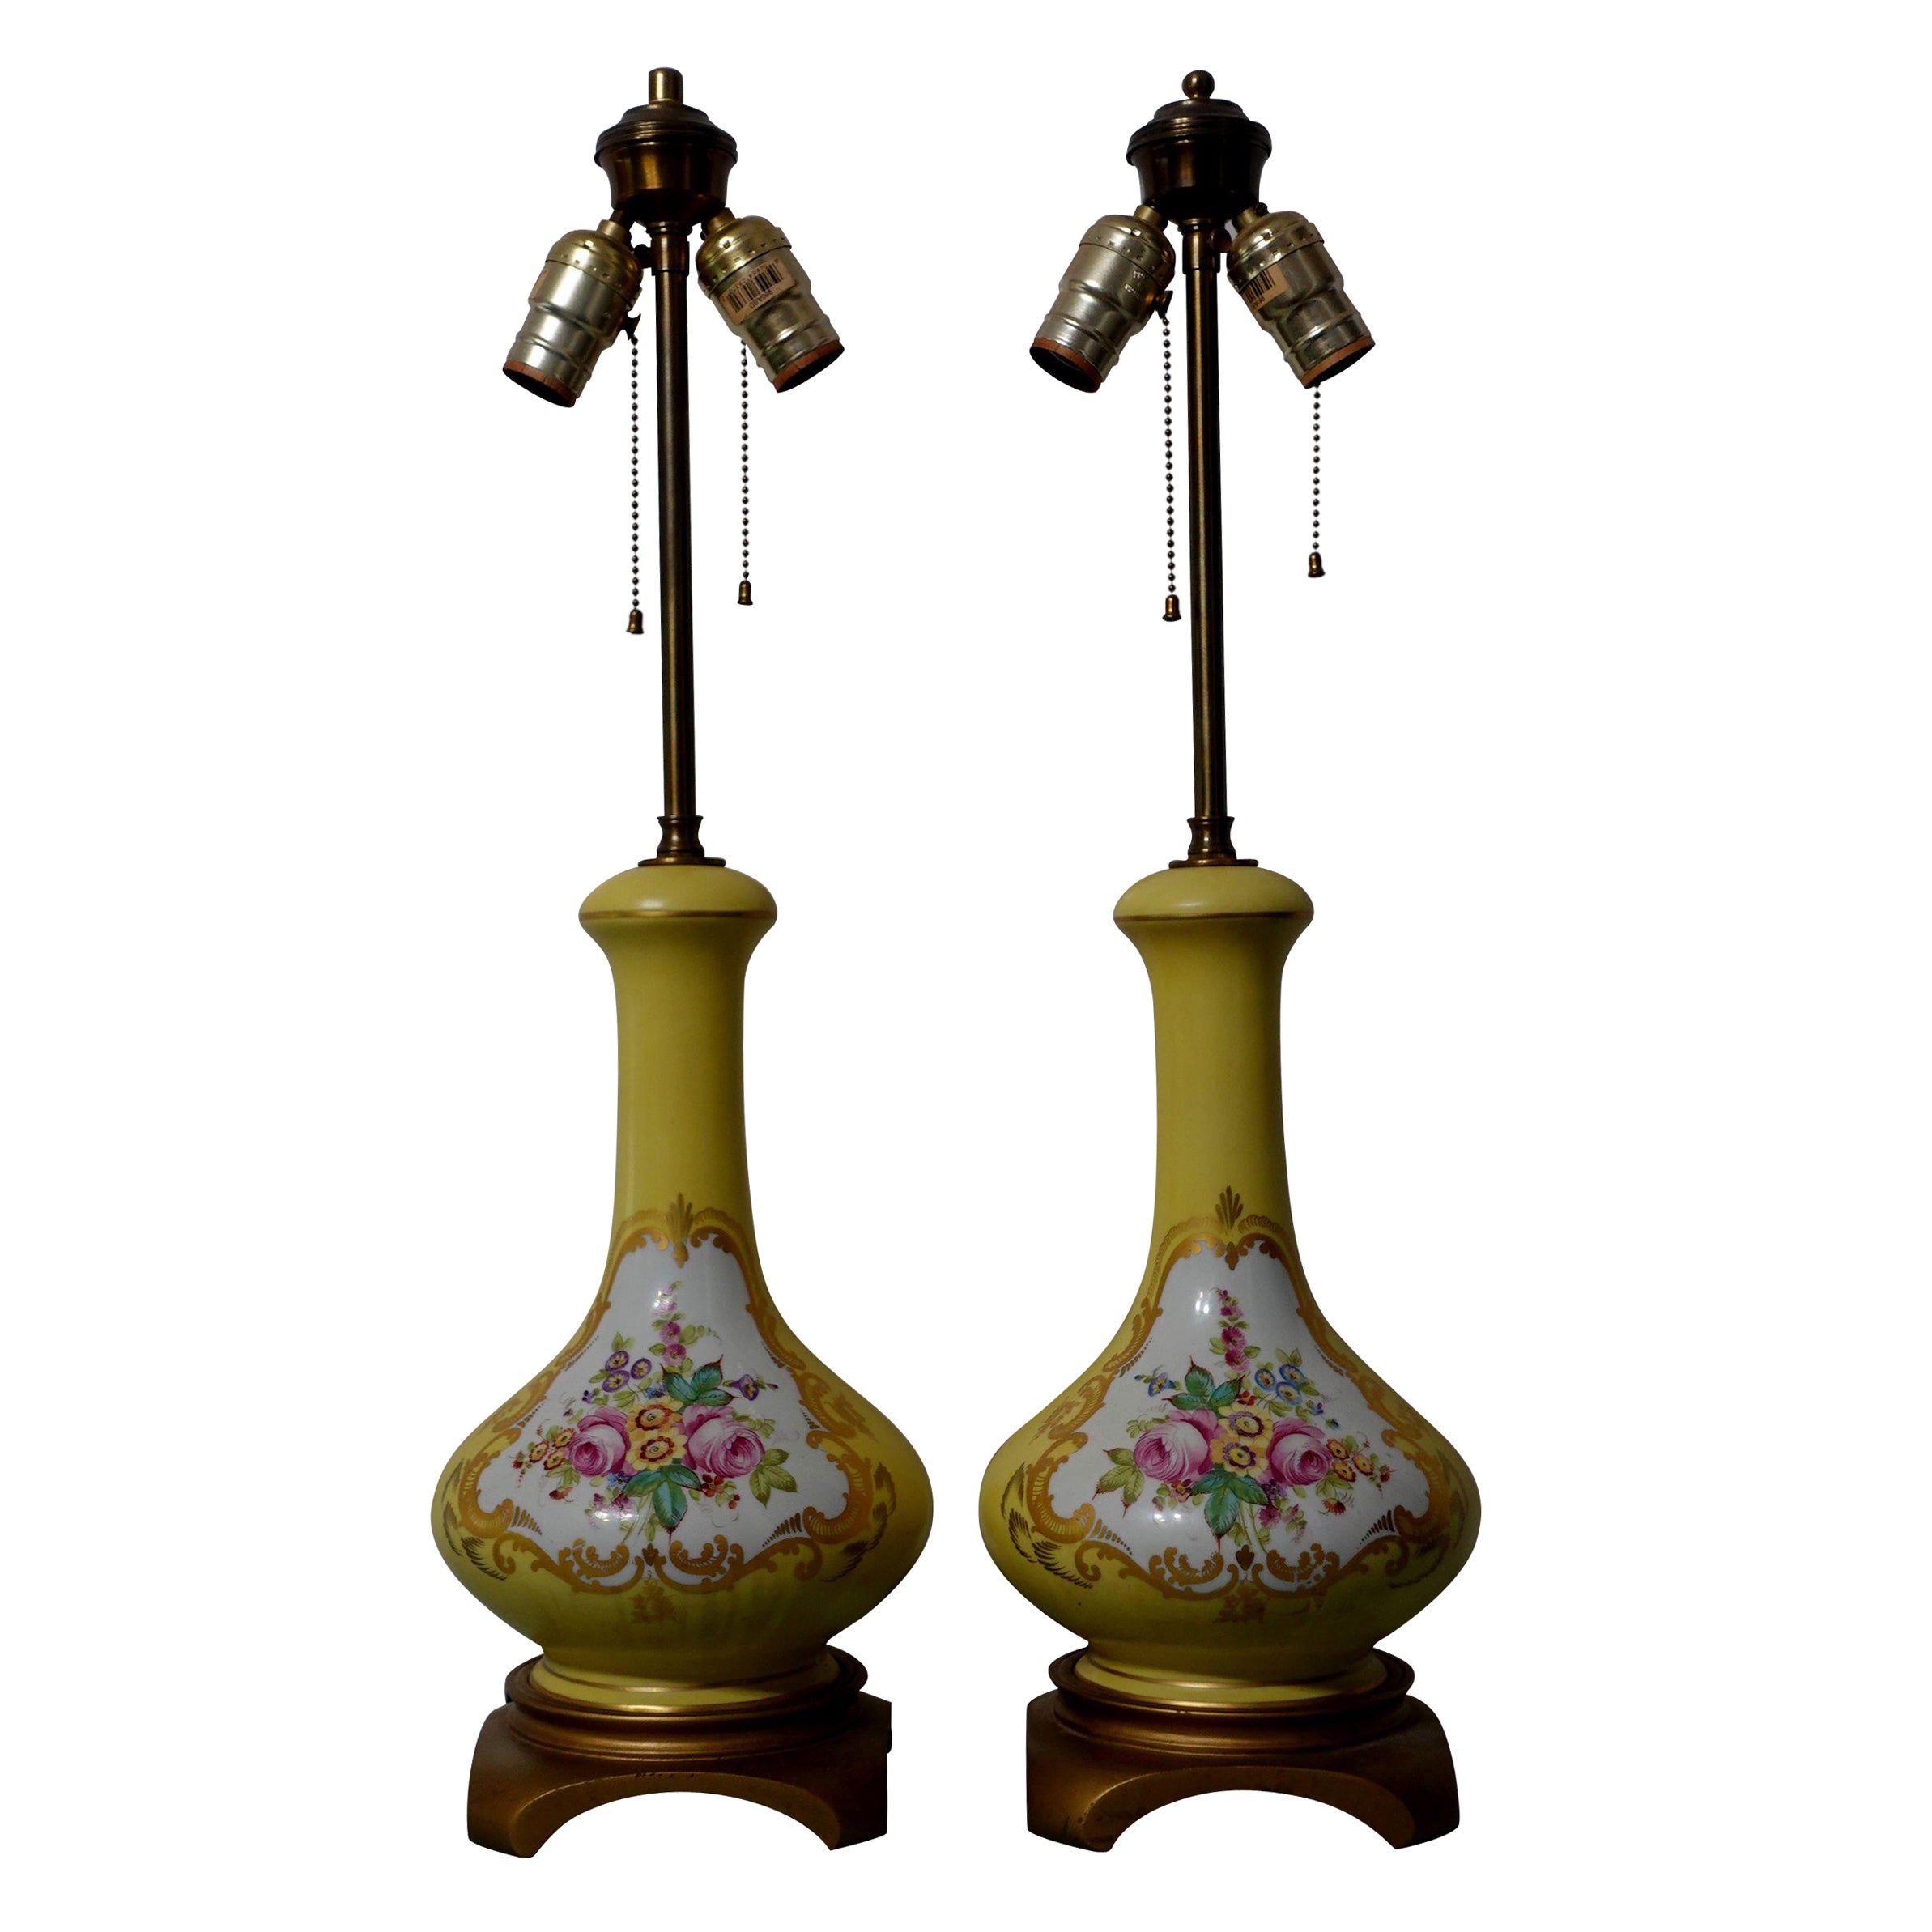 Paire de lampes florales de forme antique peintes à la main et Reserved, années 1900